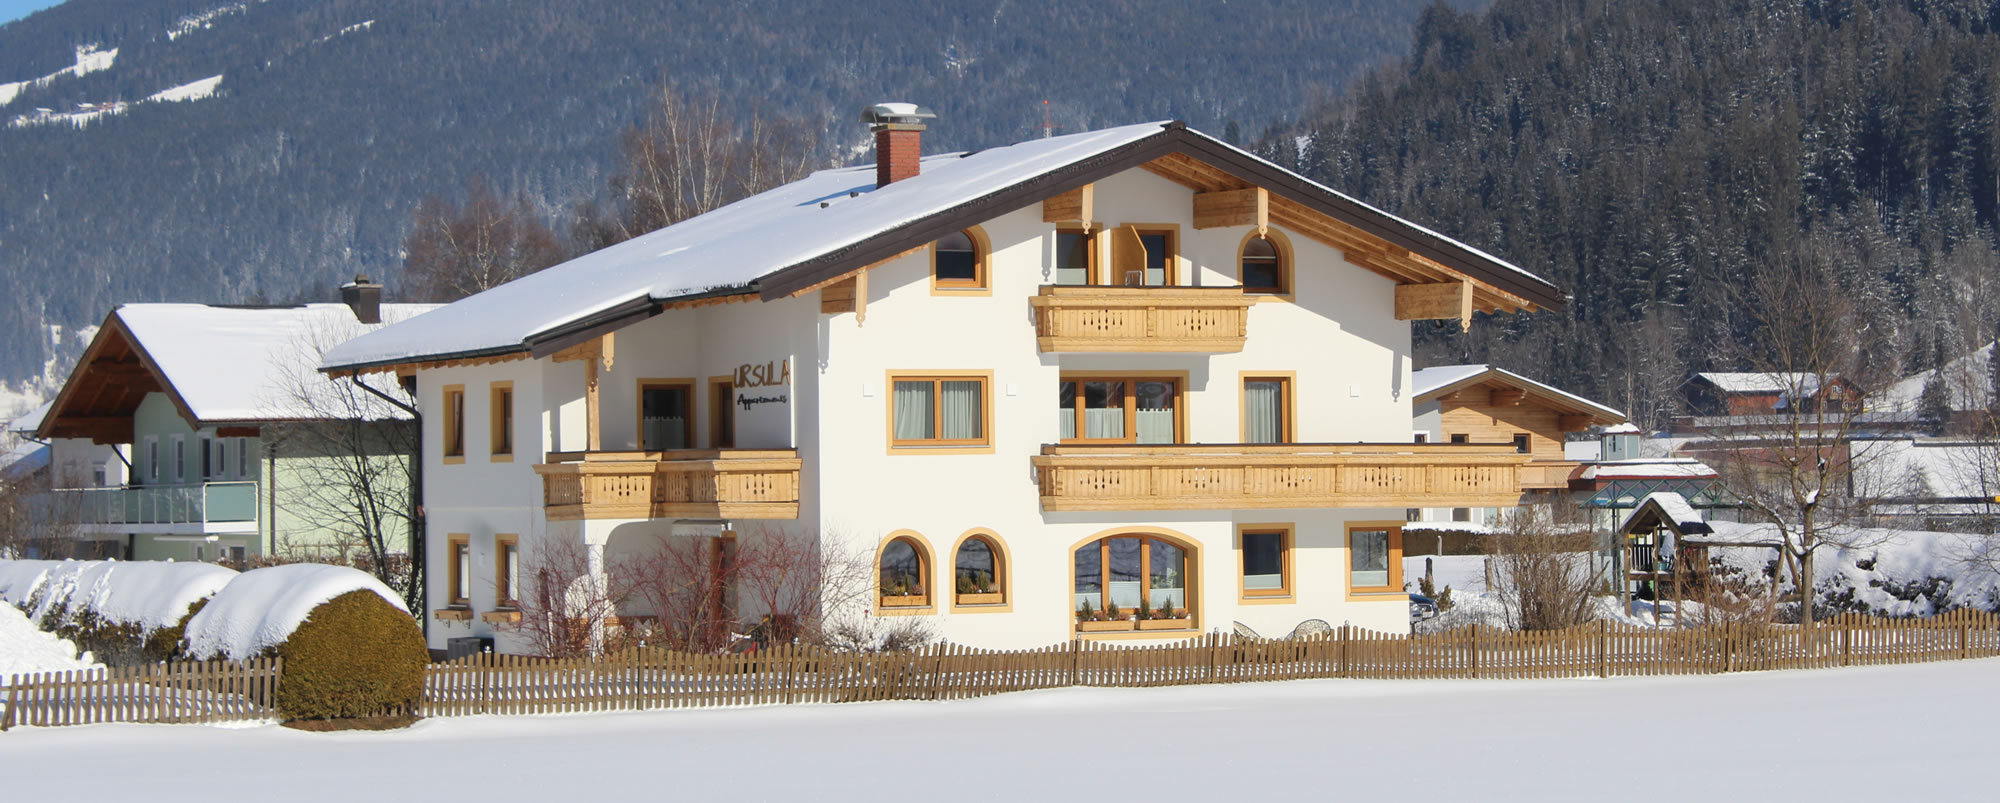 Winterurlaub im Gästehaus Ursula in Flachau